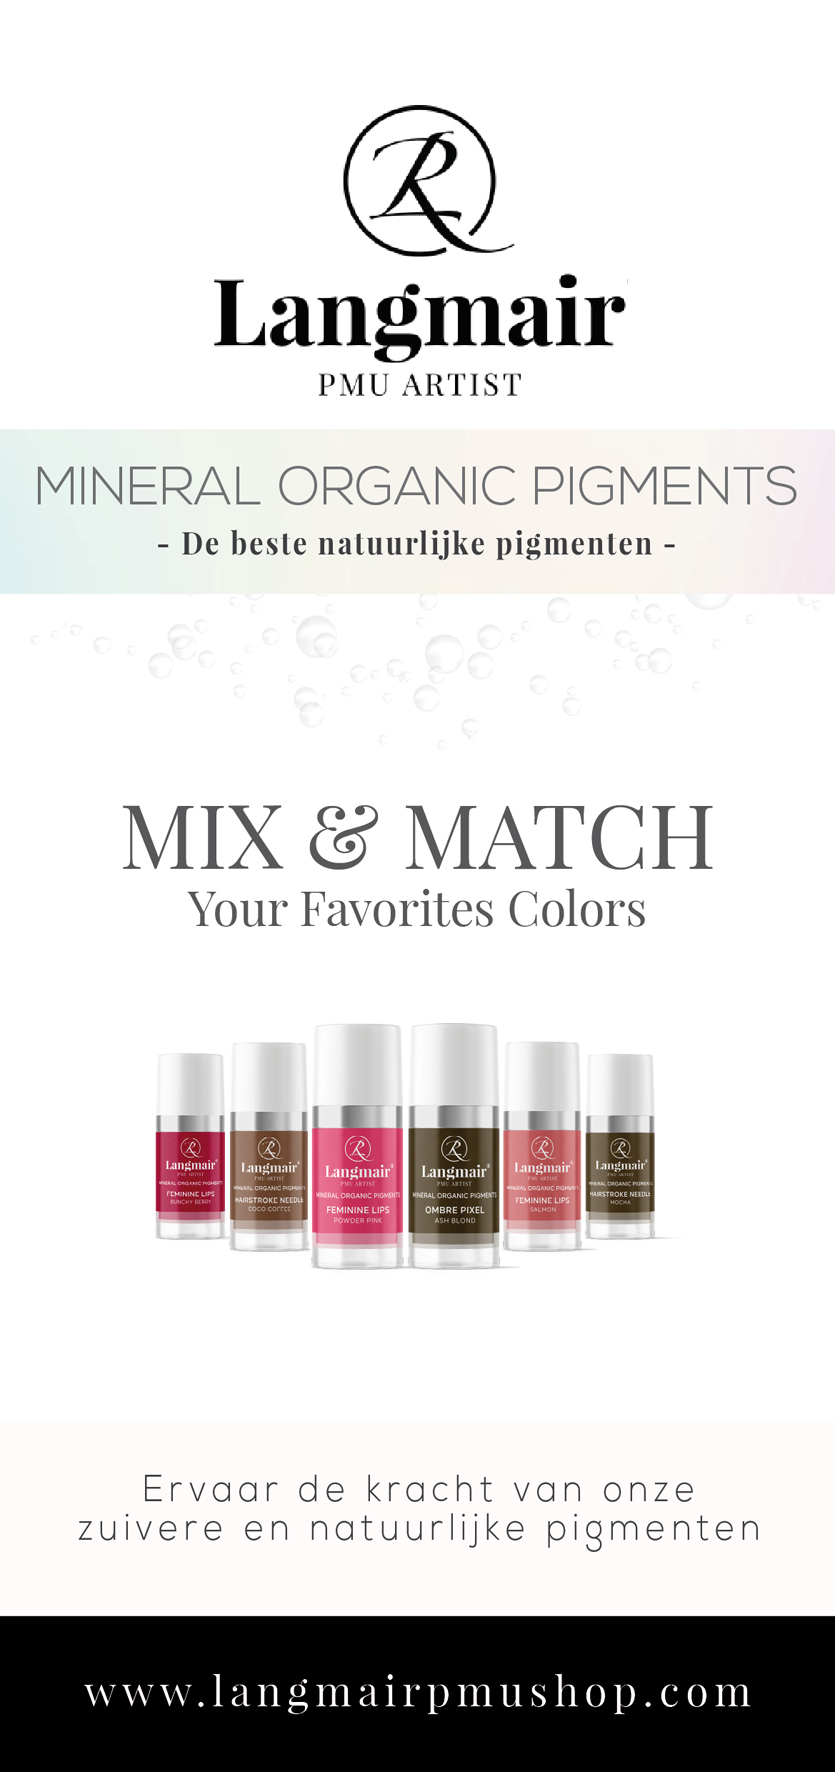 Minerals Organic Pigments